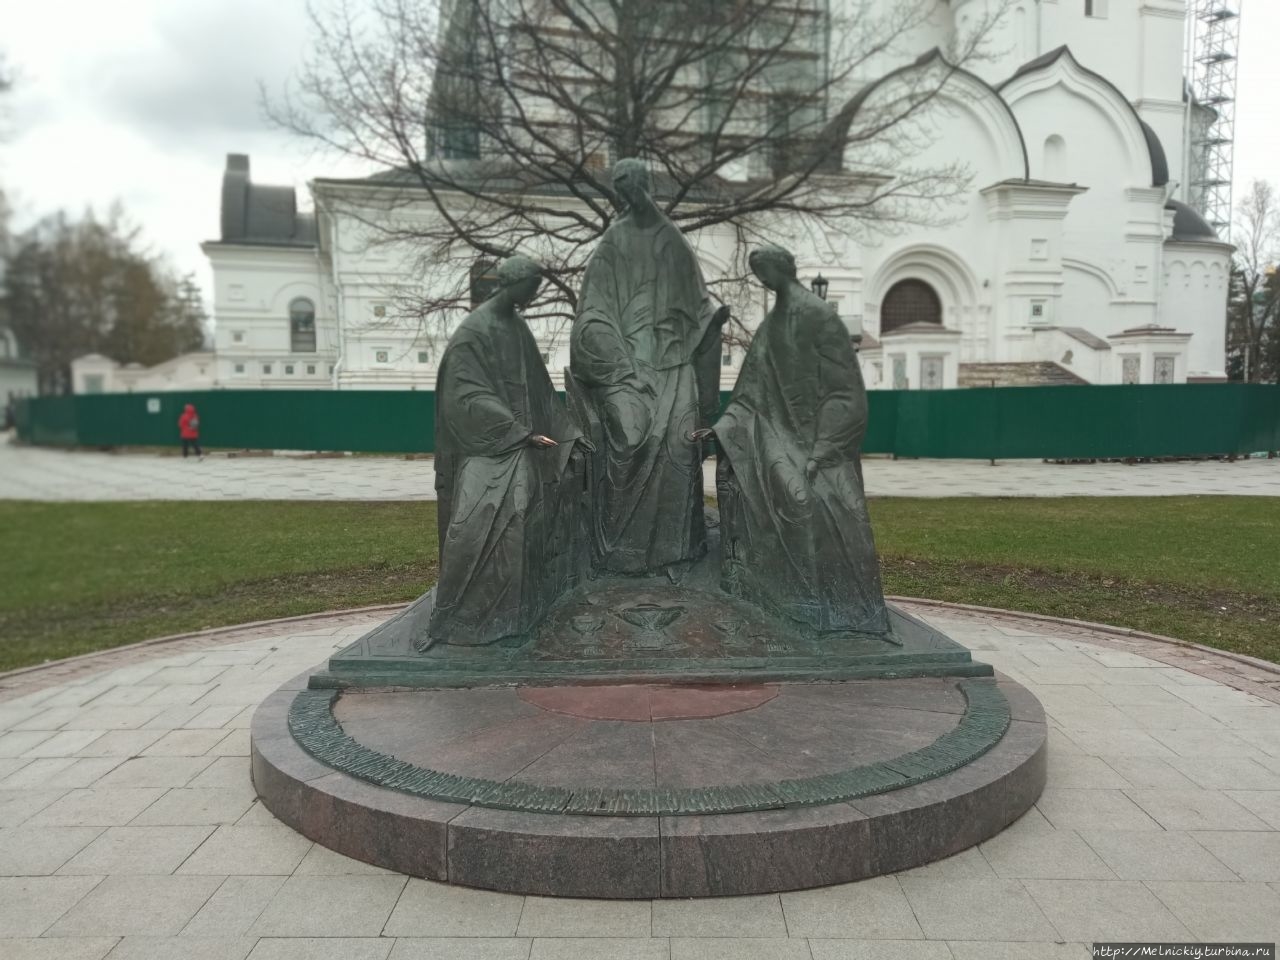 Небольшая прогулка по историческому центру Ярославль, Россия